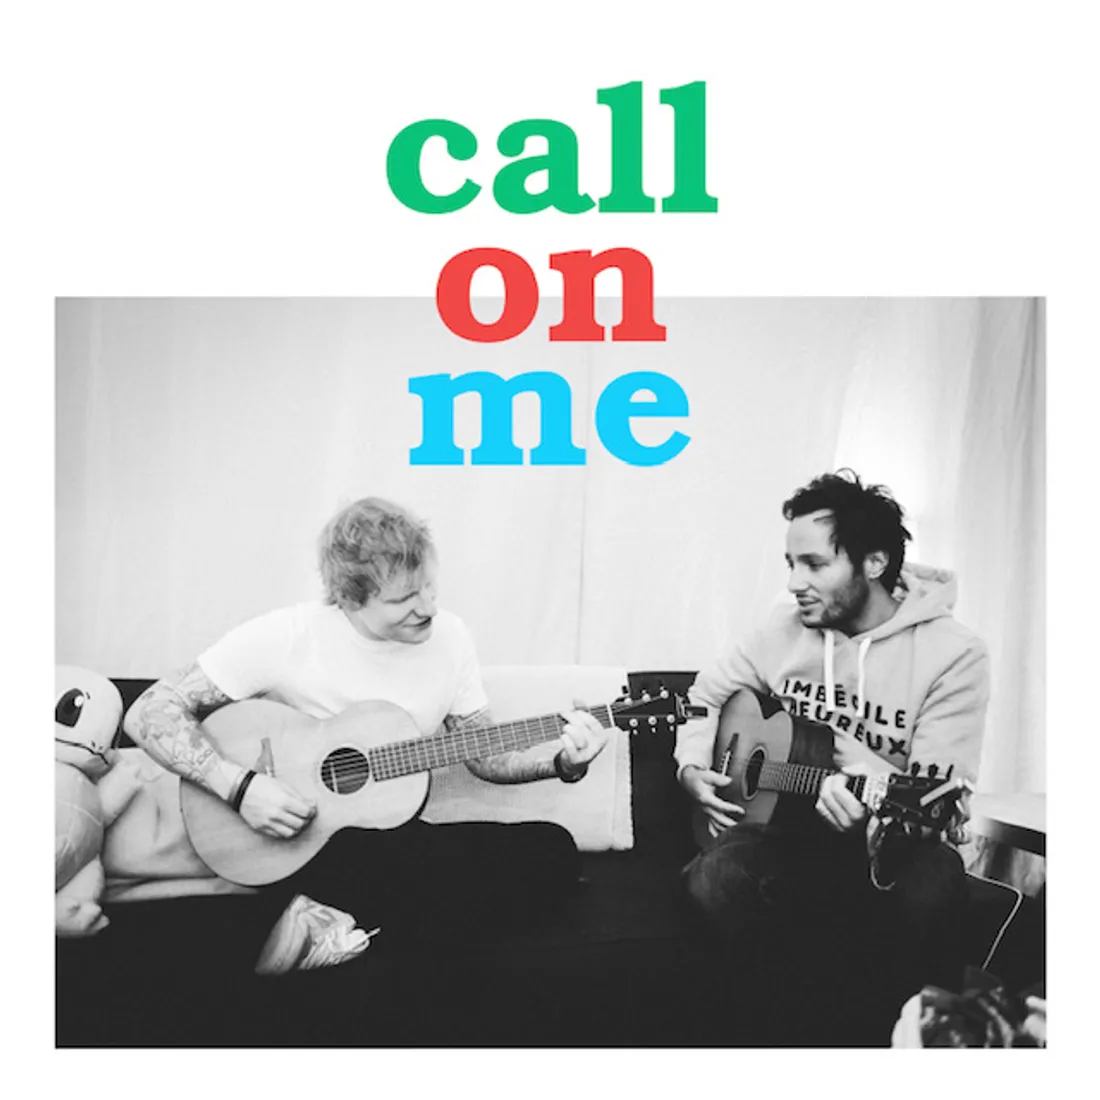 Ed Sheeran et Vianney collaborent sur "Call on me"